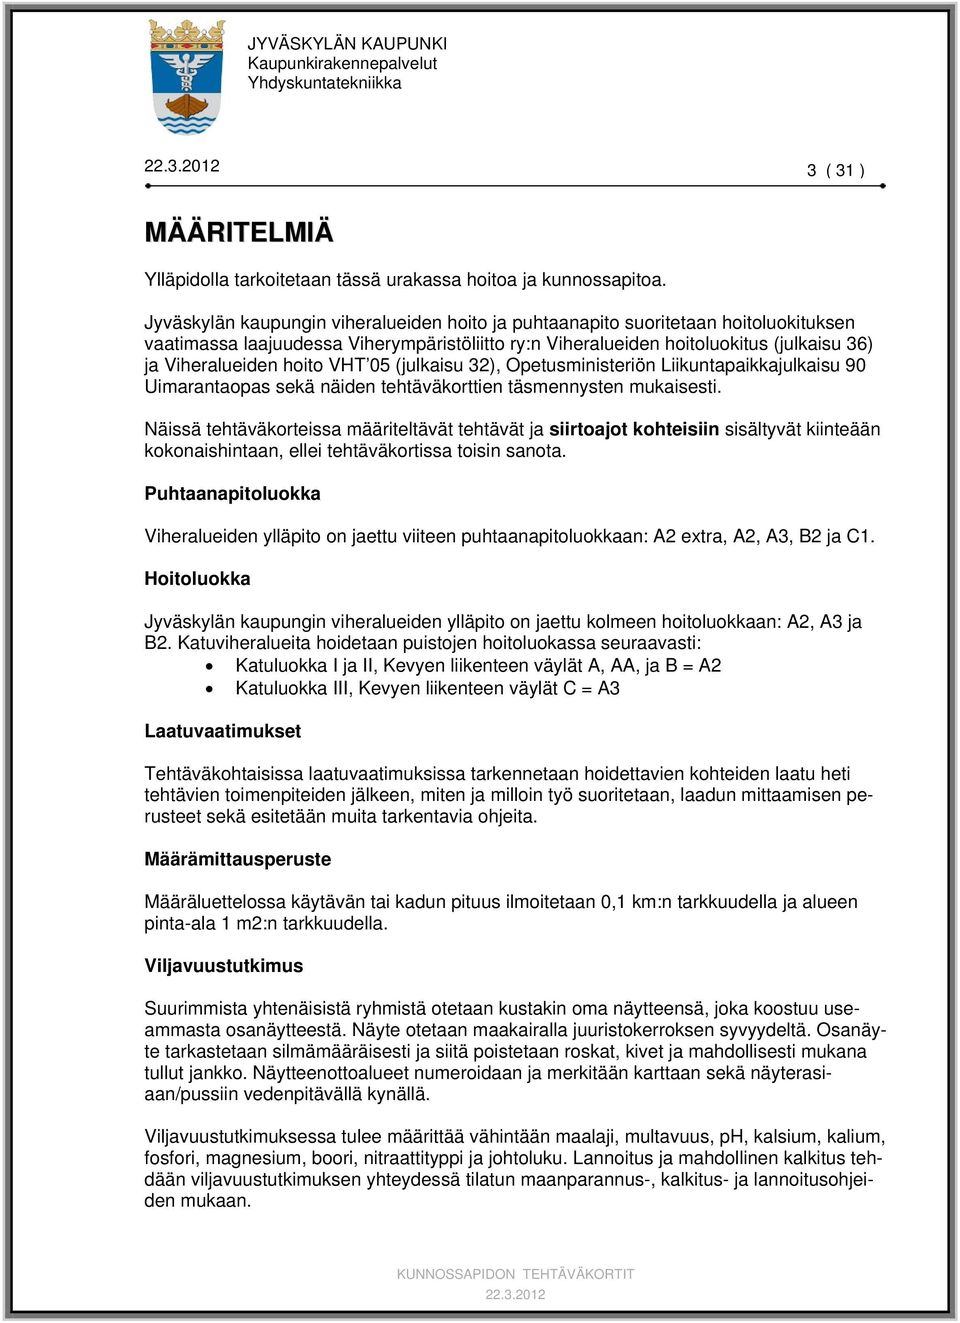 VHT 05 (julkaisu 32), Opetusministeriön Liikuntapaikkajulkaisu 90 Uimarantaopas sekä näiden tehtäväkorttien täsmennysten mukaisesti.